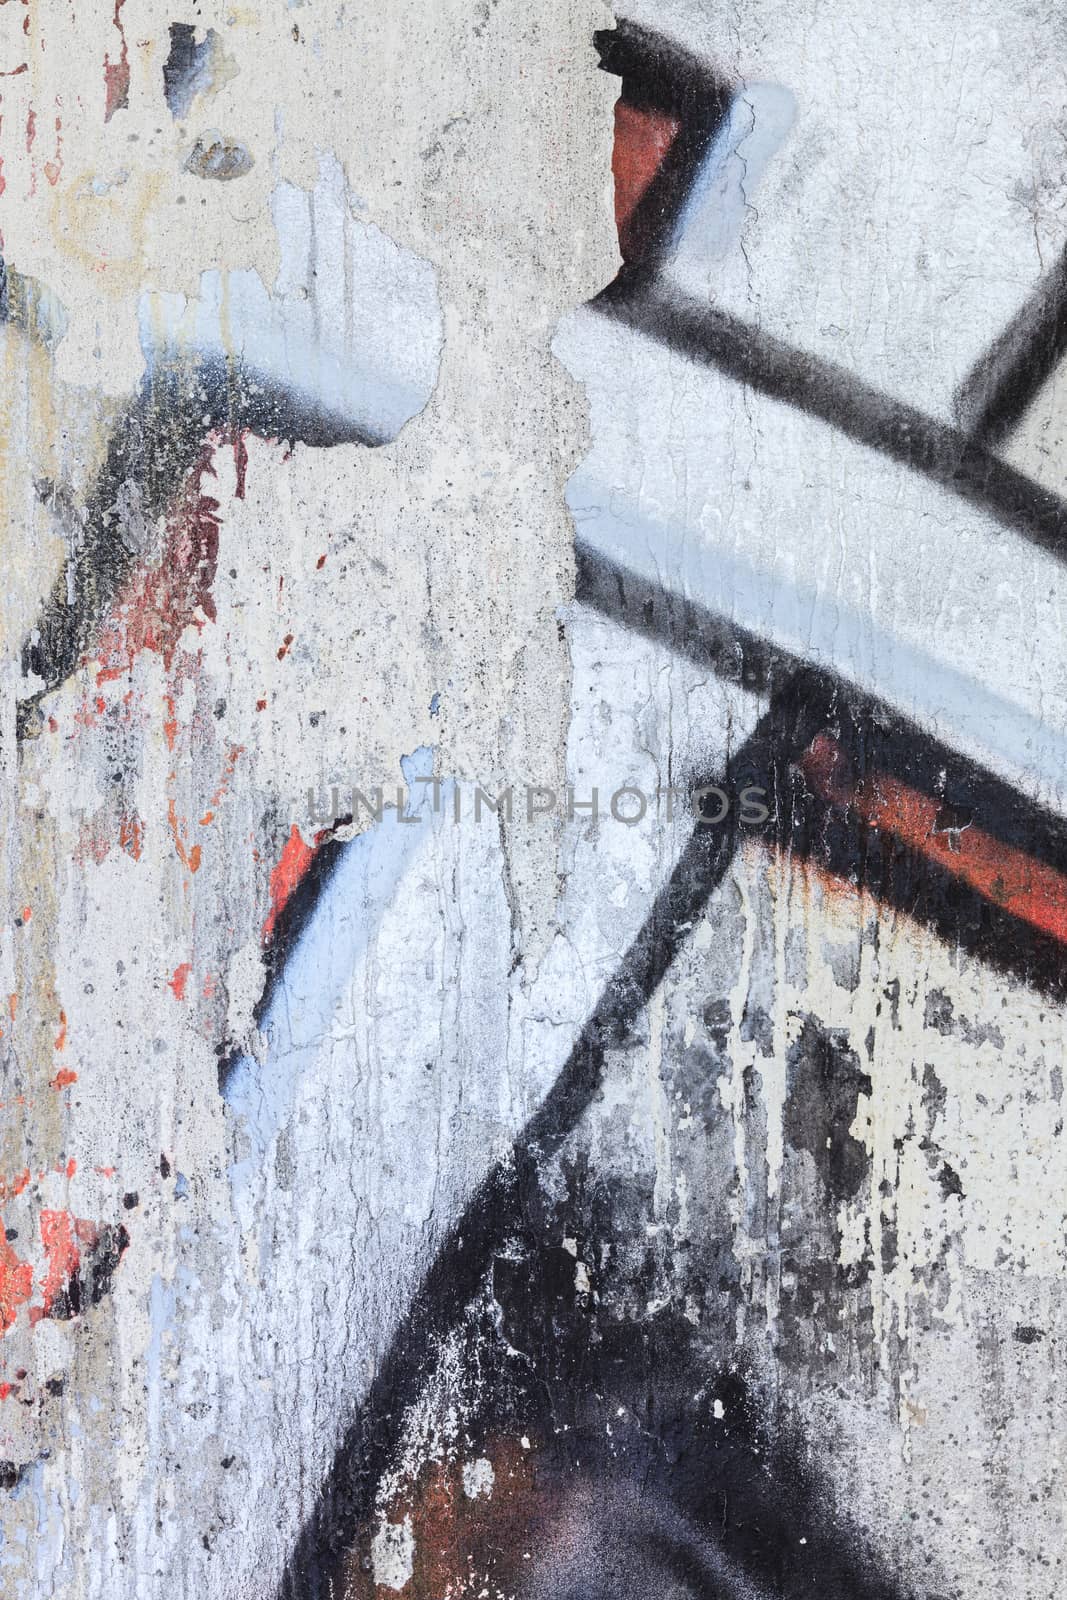 Gaffiti closeup in a damaged concrete wall by juhku